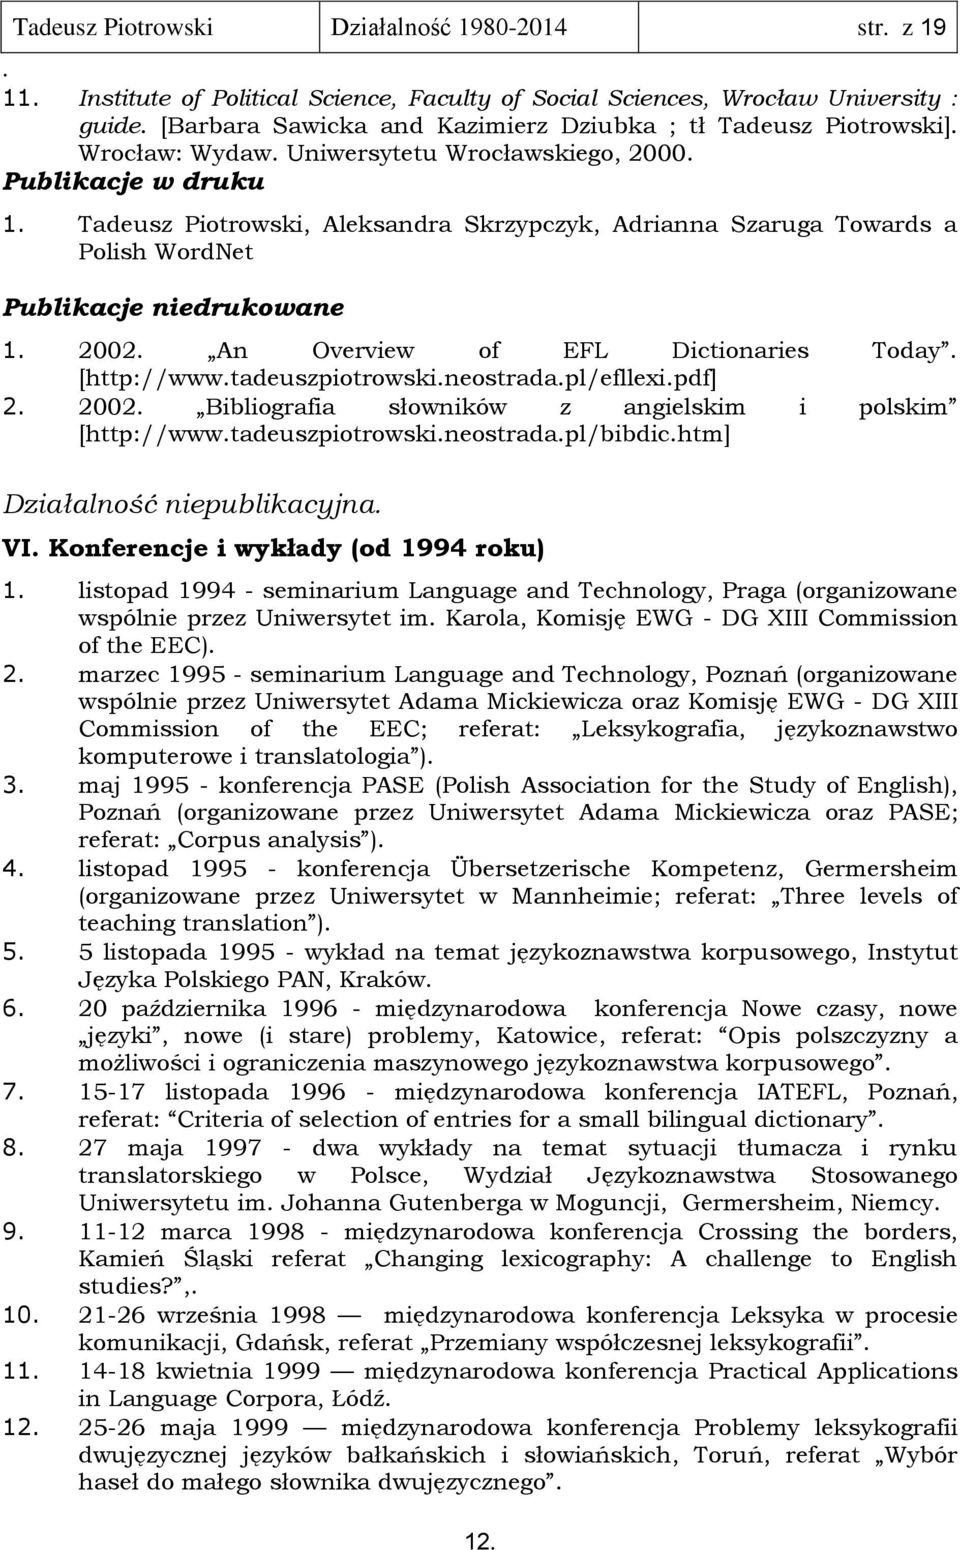 Overview of EFL Dictionaries Today [http://wwwtadeuszpiotrowskineostradapl/efllexipdf] 2 2002 Bibliografia słowników z angielskim i polskim [http://wwwtadeuszpiotrowskineostradapl/bibdichtm]